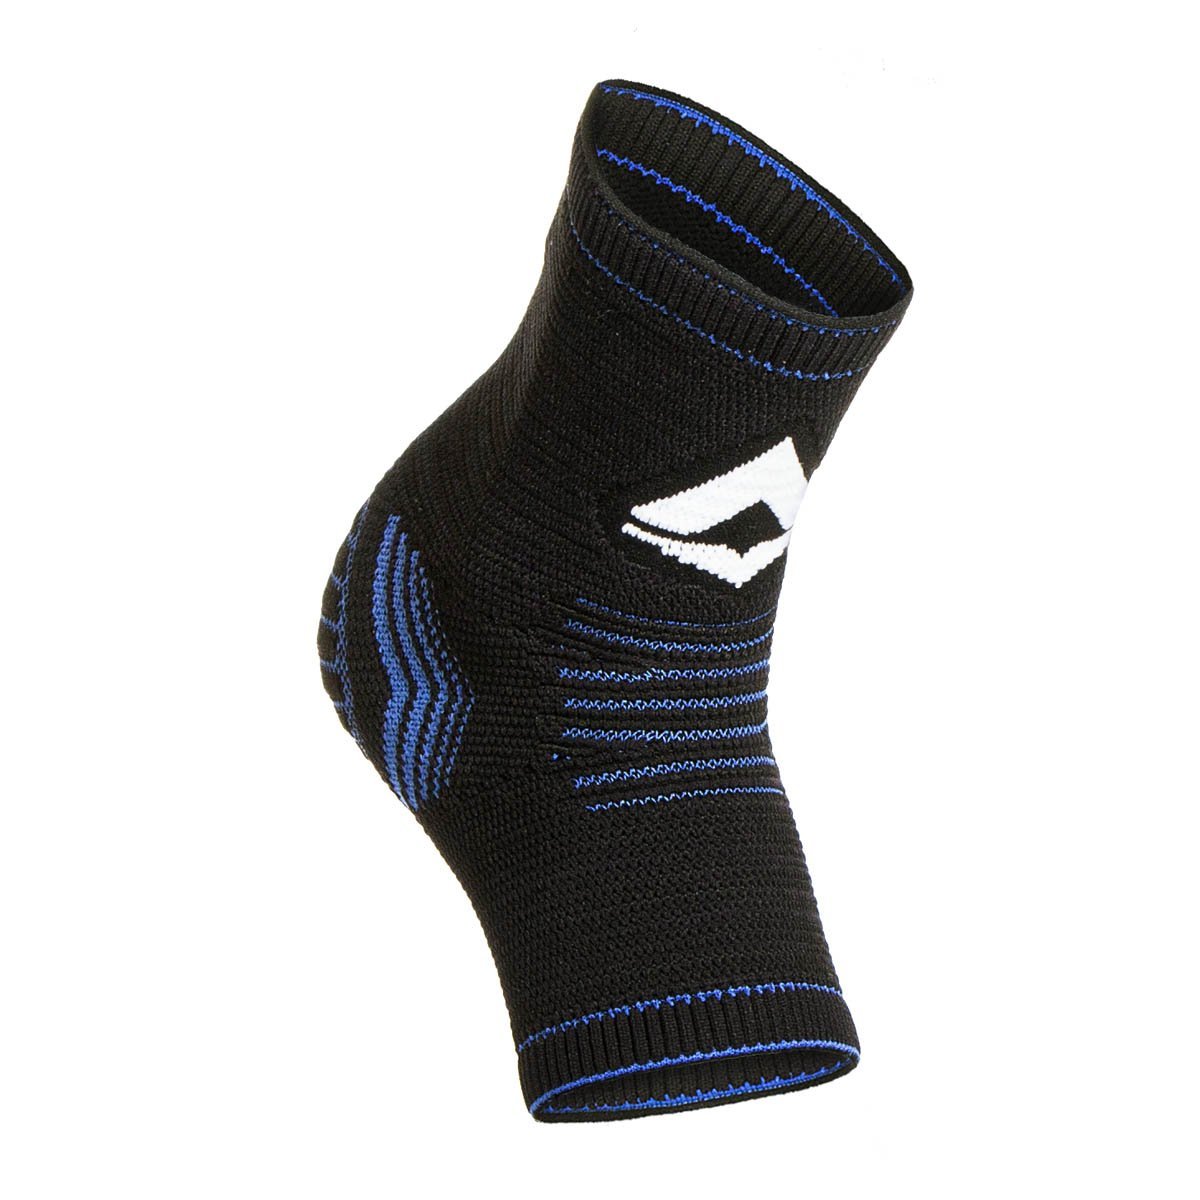 Tornozeleira de Compressão Sense Knit 3D Alasca:Azul/P/Unissex